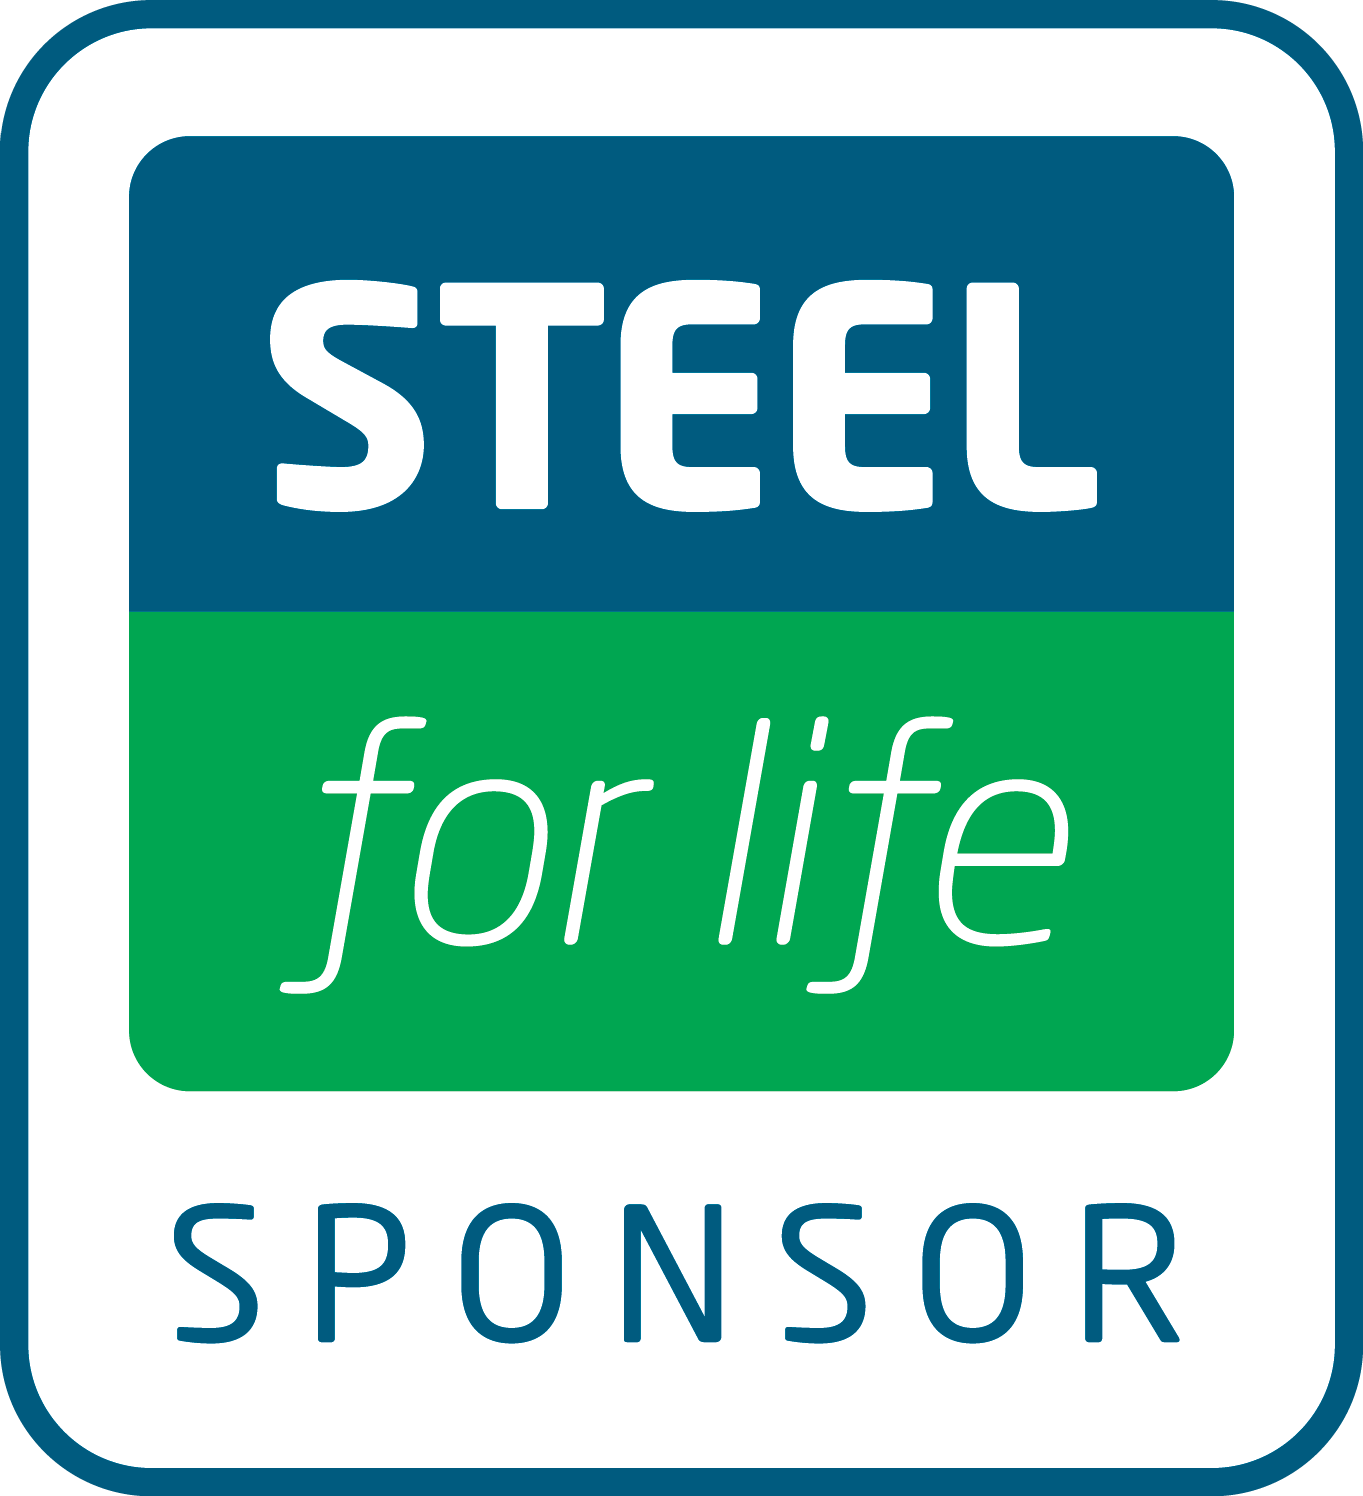 Steel for life sponsor logo